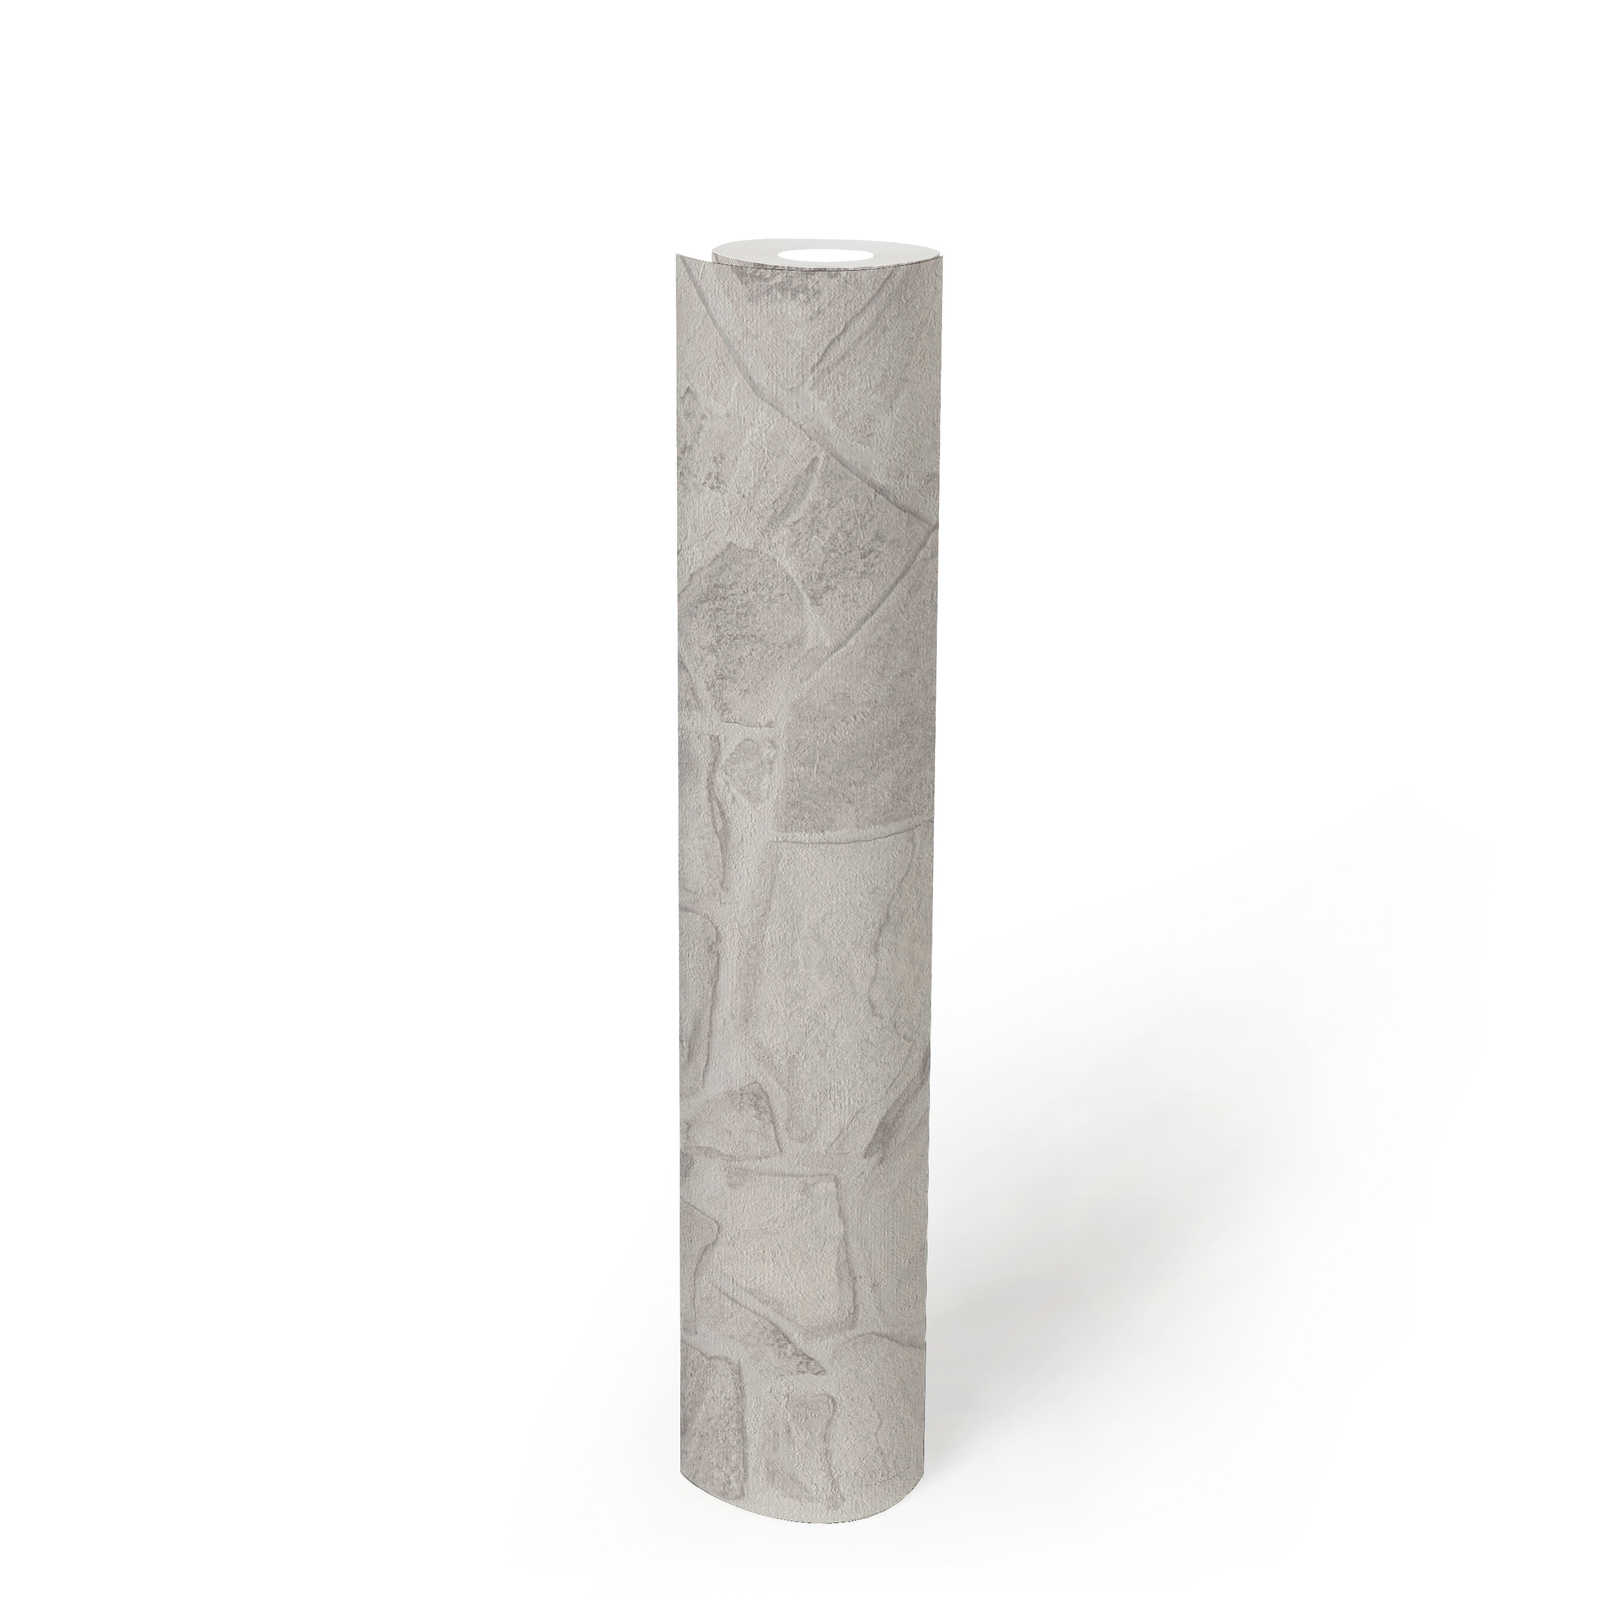             Steenlook vliesbehang met 3D-effect metselwerk - grijs, wit, grijs
        